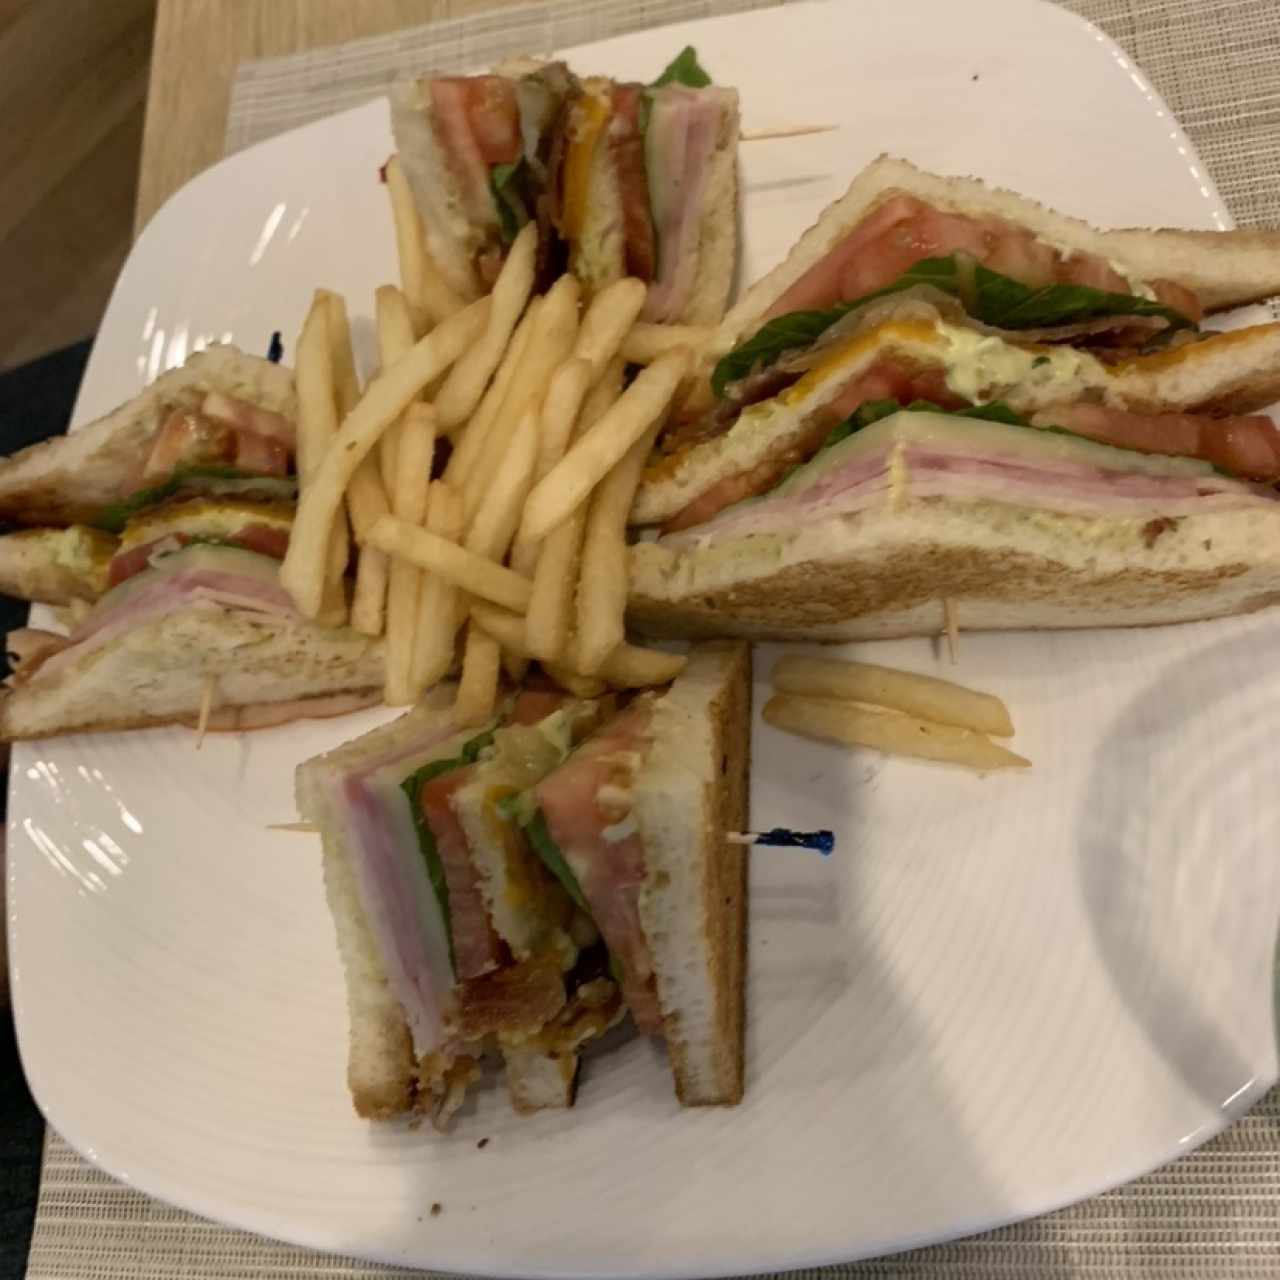 Avo Club Sandwich